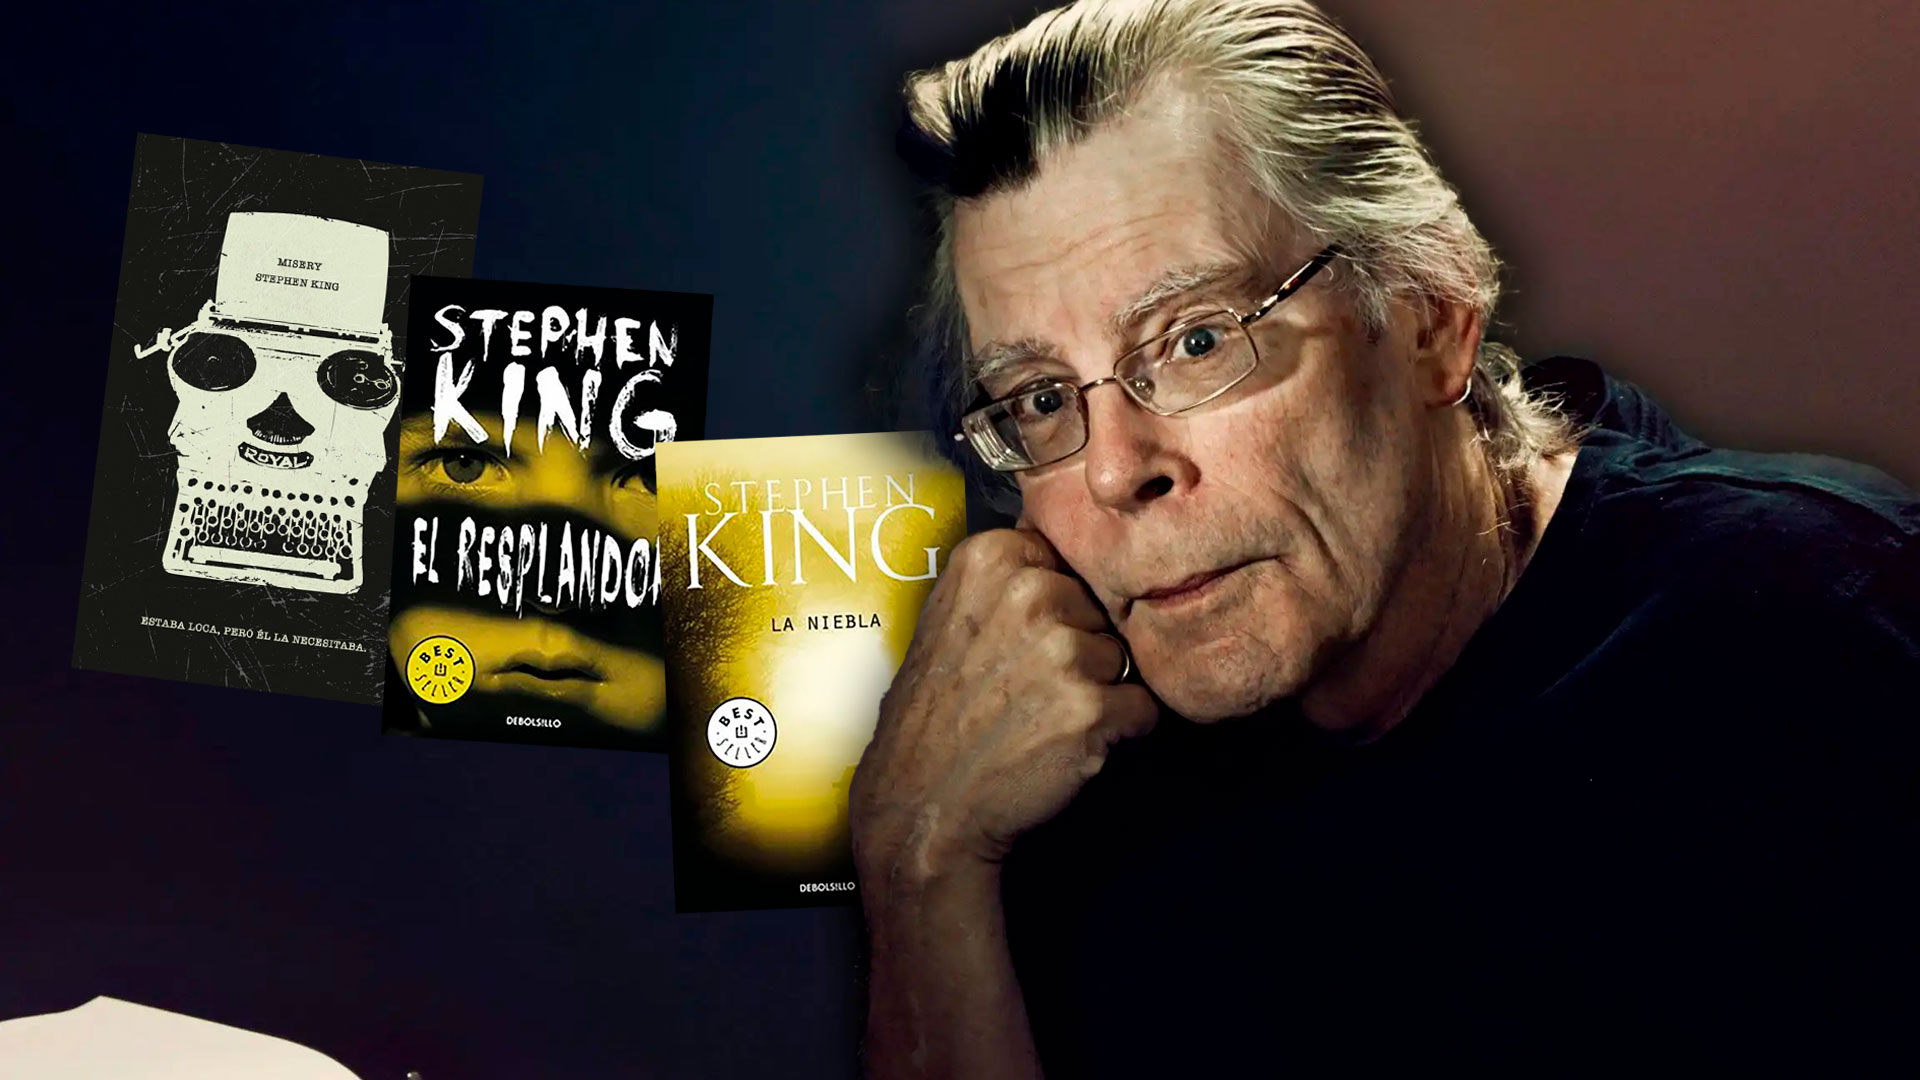 "El resplandor", "La niebla" y "Misery": tres de los mejores libros de Stephen King a precios amigables. 